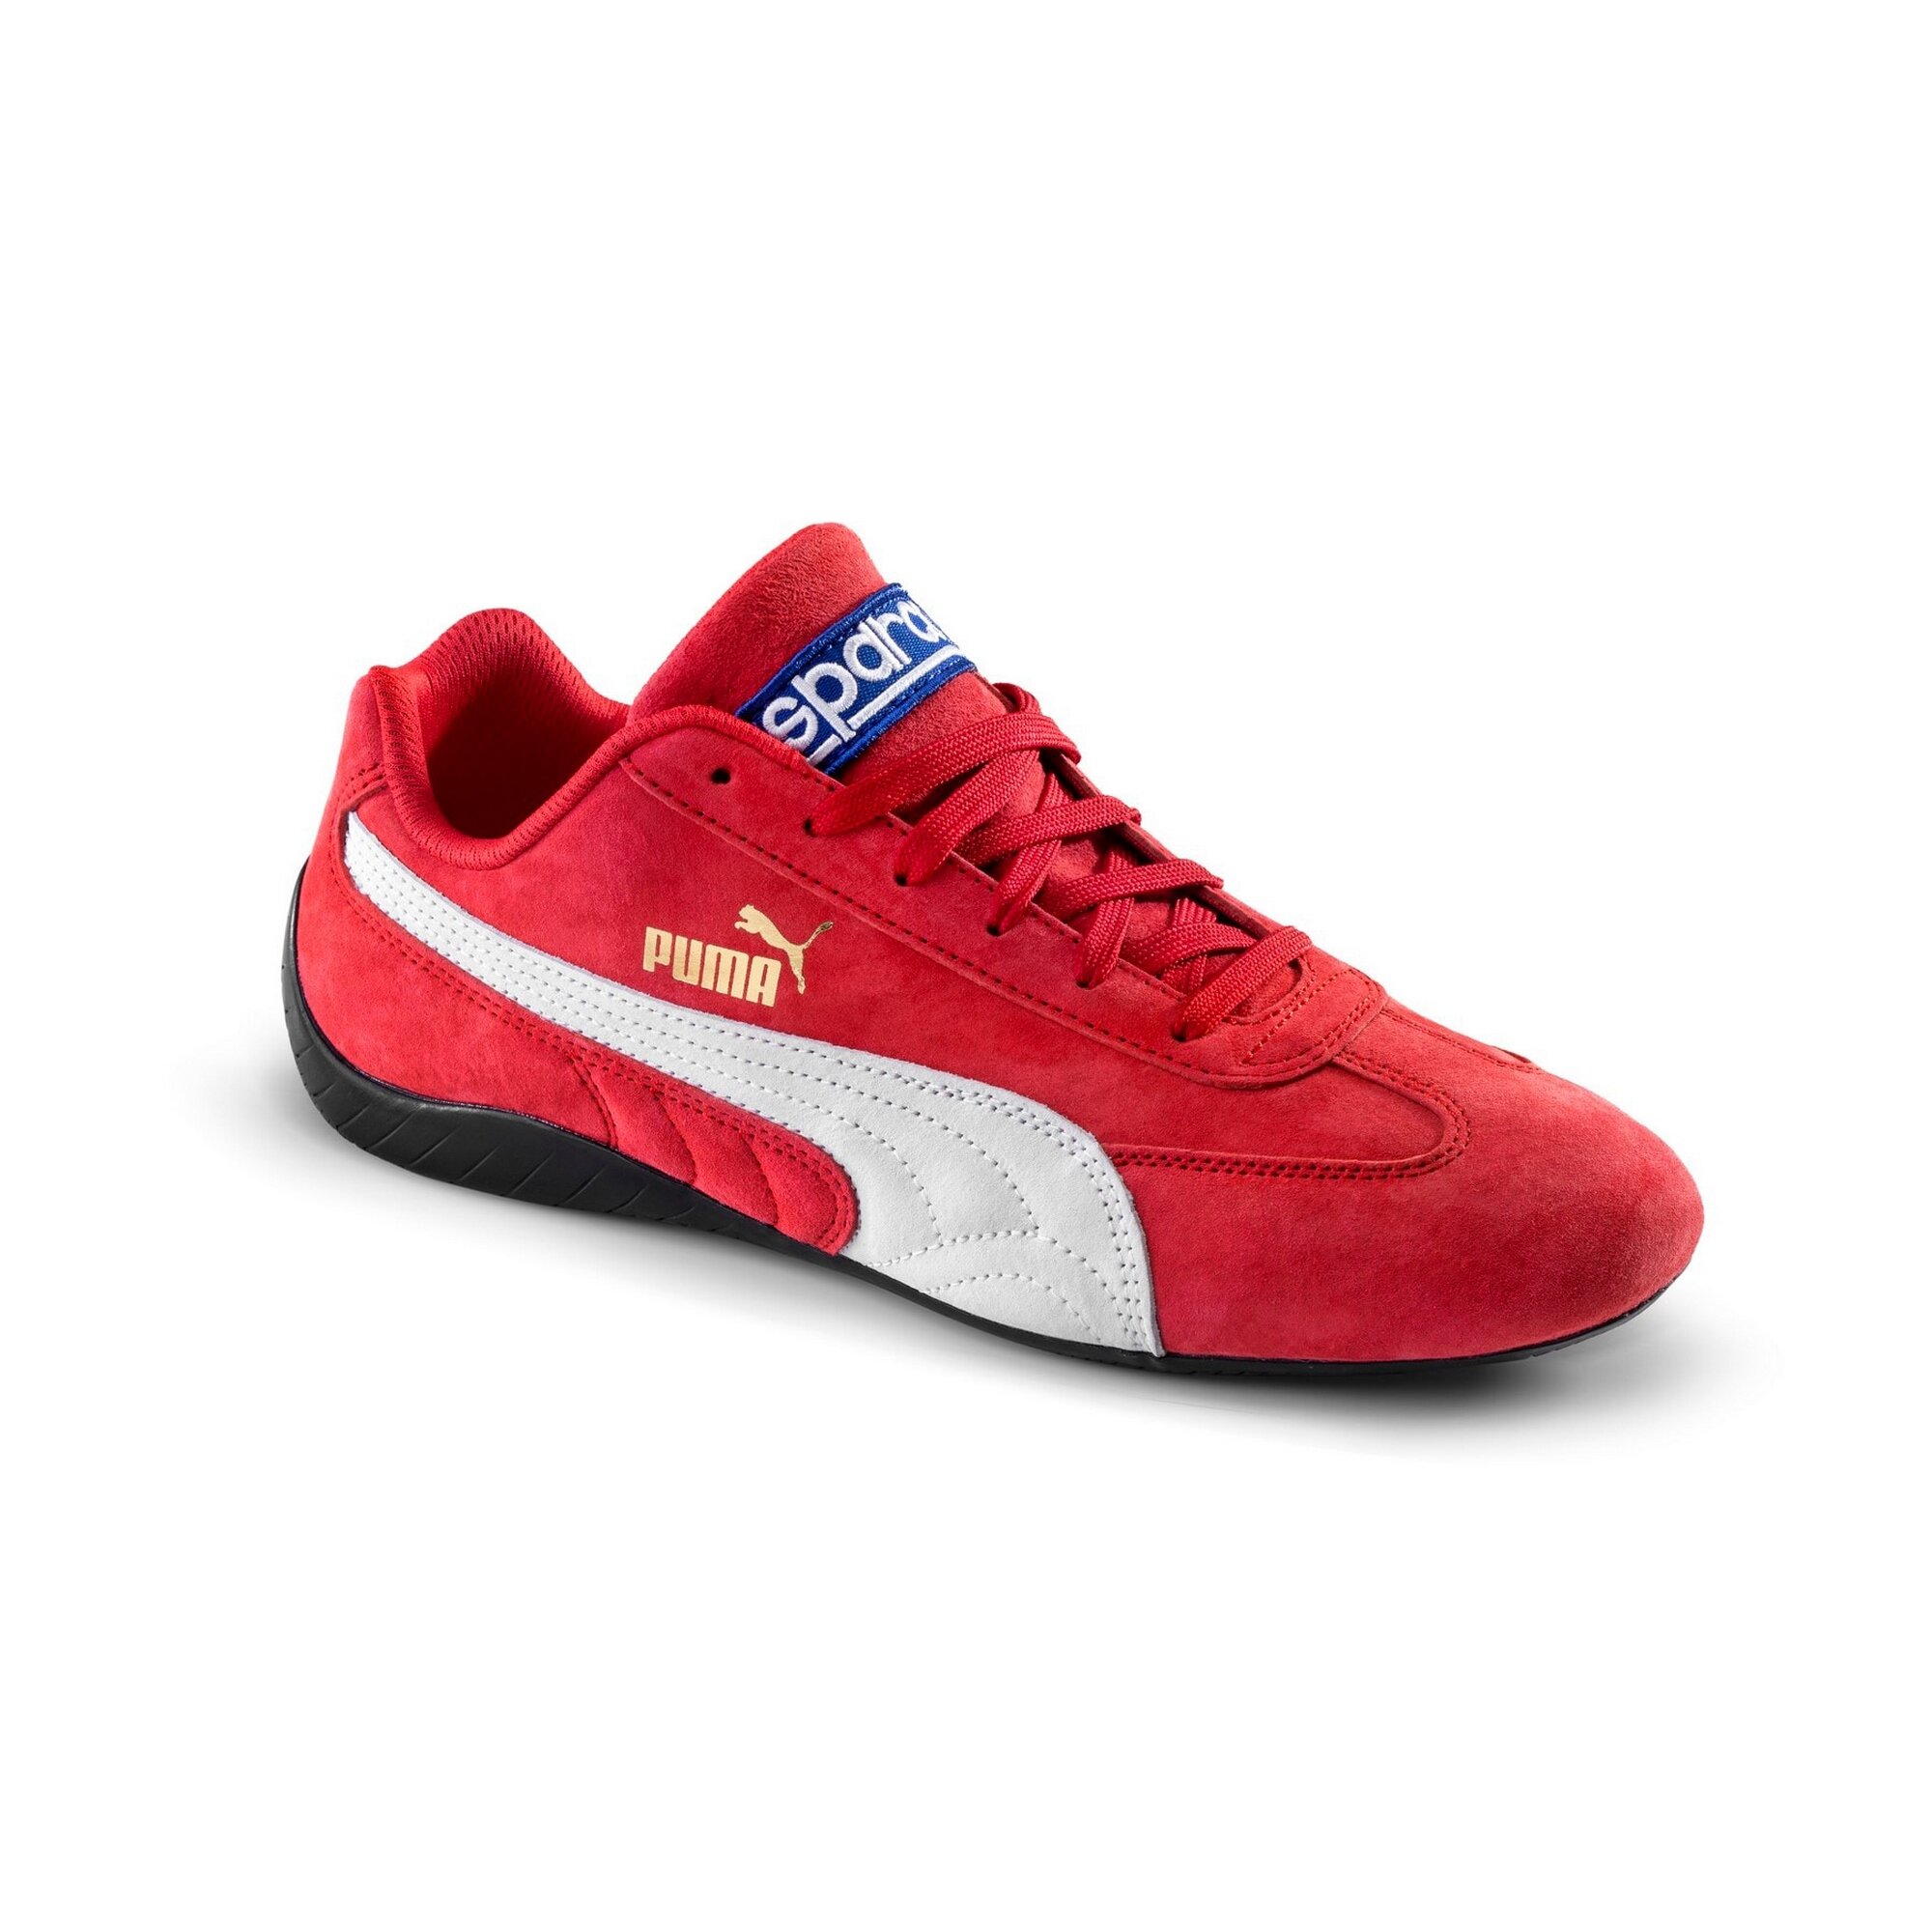 Shoes Sparco Puma Speedcat Red | Sparco - Radne